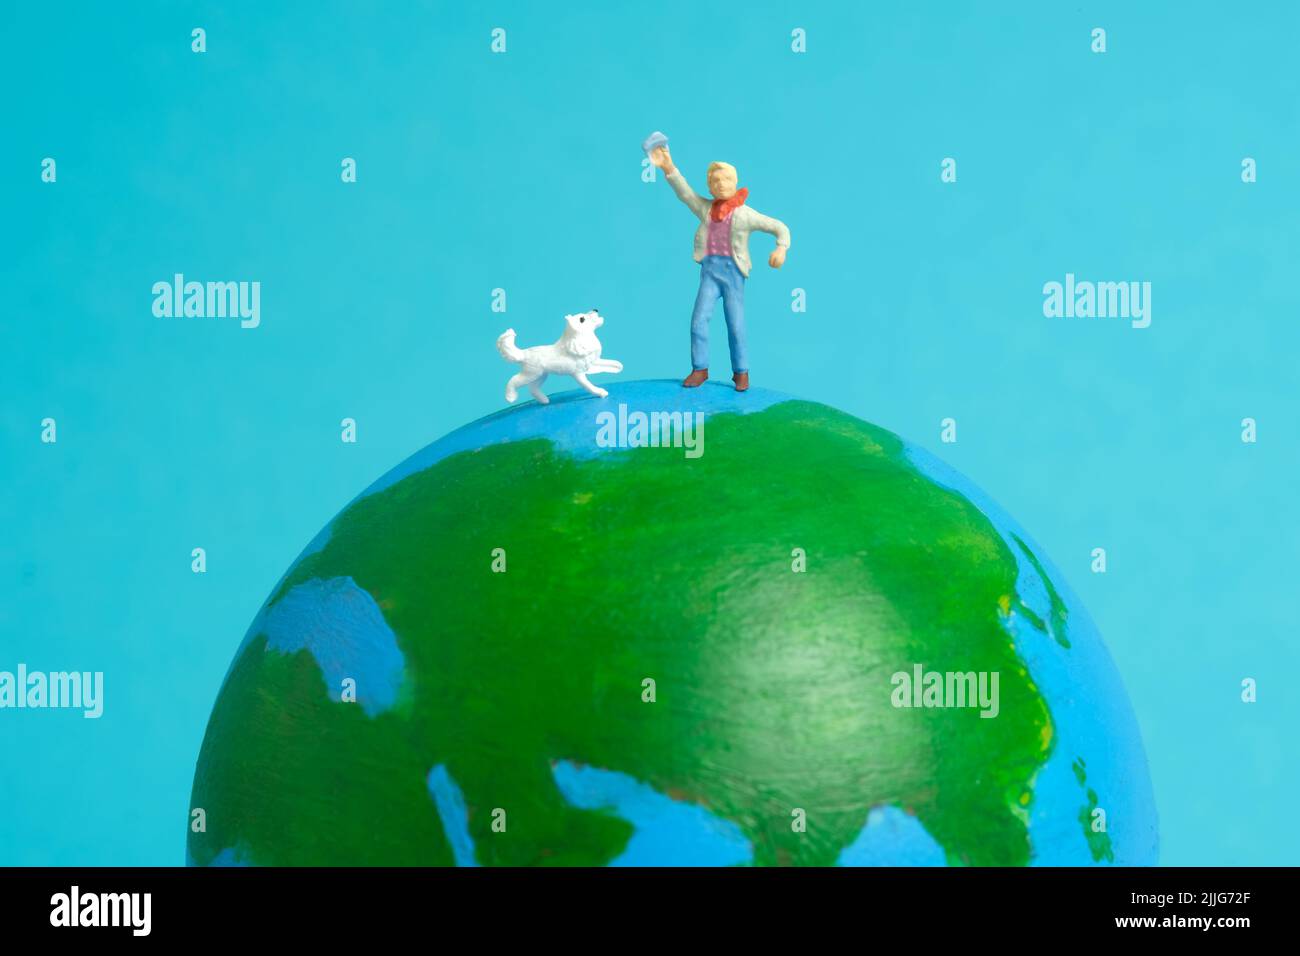 Miniatur Menschen Spielzeug Figur Fotografie. Konzept für den internationalen Kindertag. Ein Kind spielt mit Hund über der Erde Globus, isoliert auf blauem Hintergrund. Bild Stockfoto